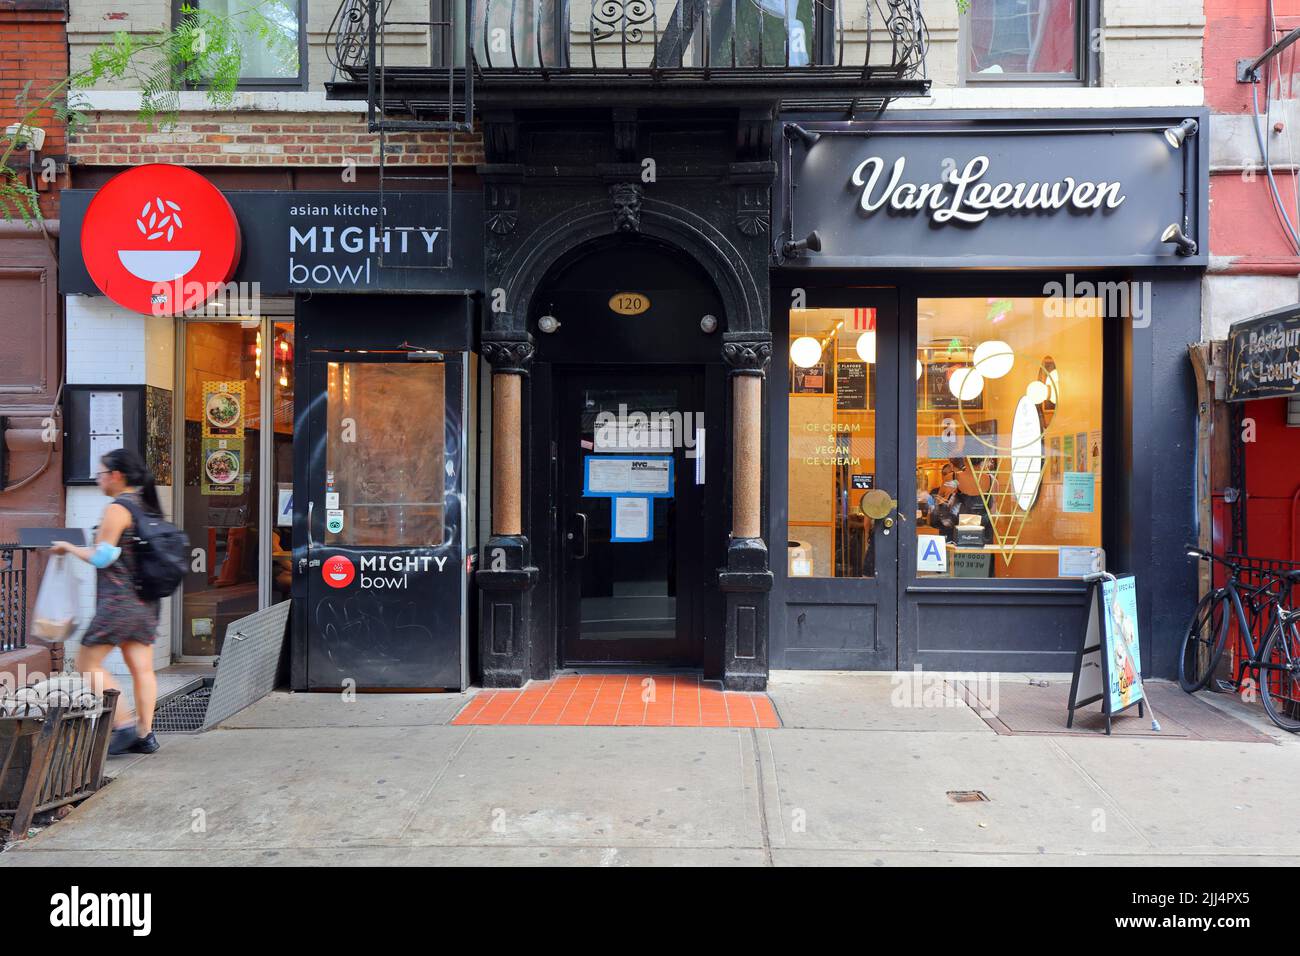 Van Leeuwen Ice Cream, Mighty Bowl, 120 MacDougal St, New York, NY. Magasins extérieurs de restaurants dans le quartier Greenwich Village de Manhattan Banque D'Images